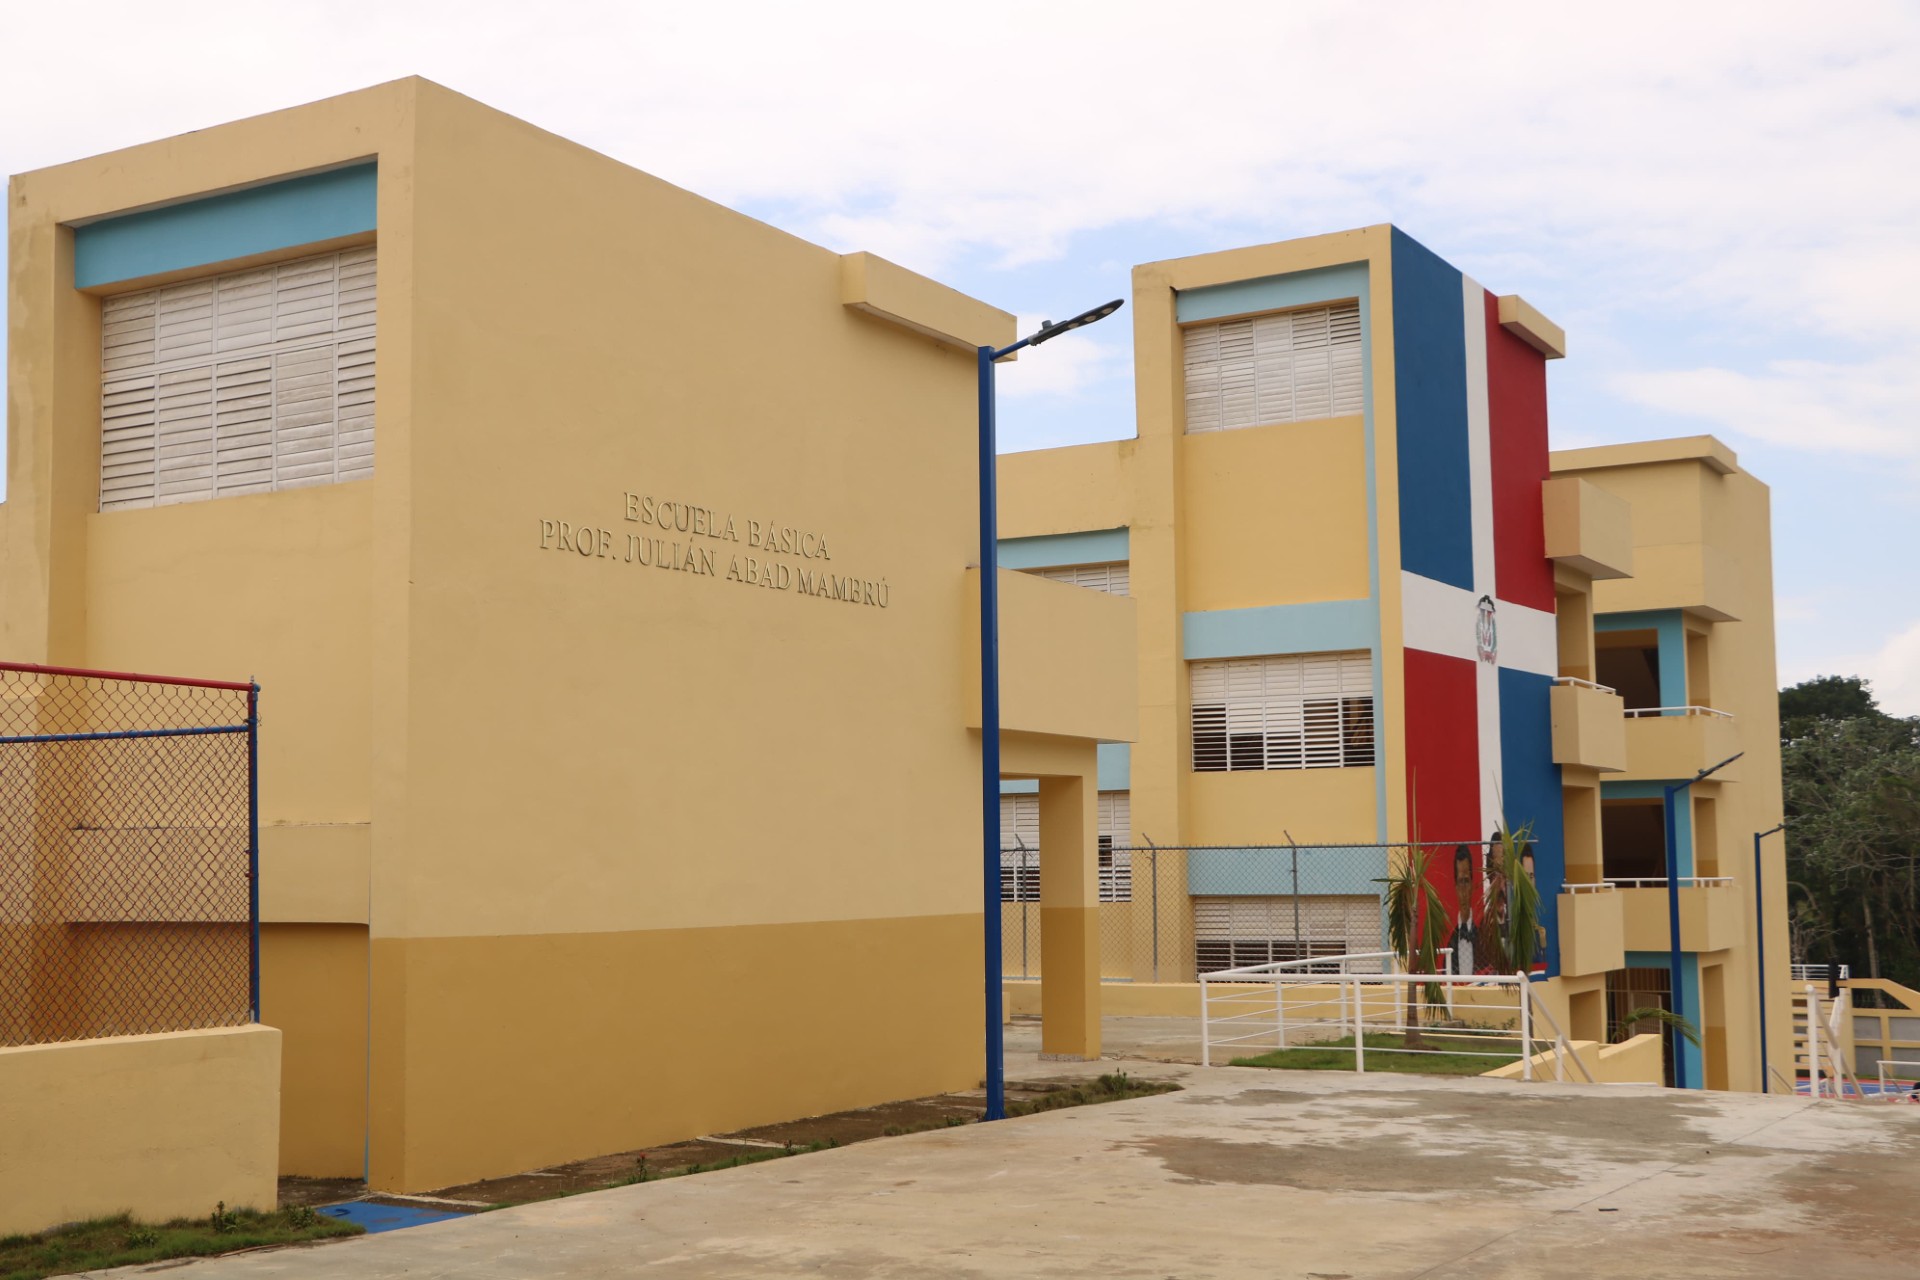 REPÚBLICA DOMINICANA: Ministerio de Educación entrega escuelas básicas en el Distrito 15-06 de Santo Domingo